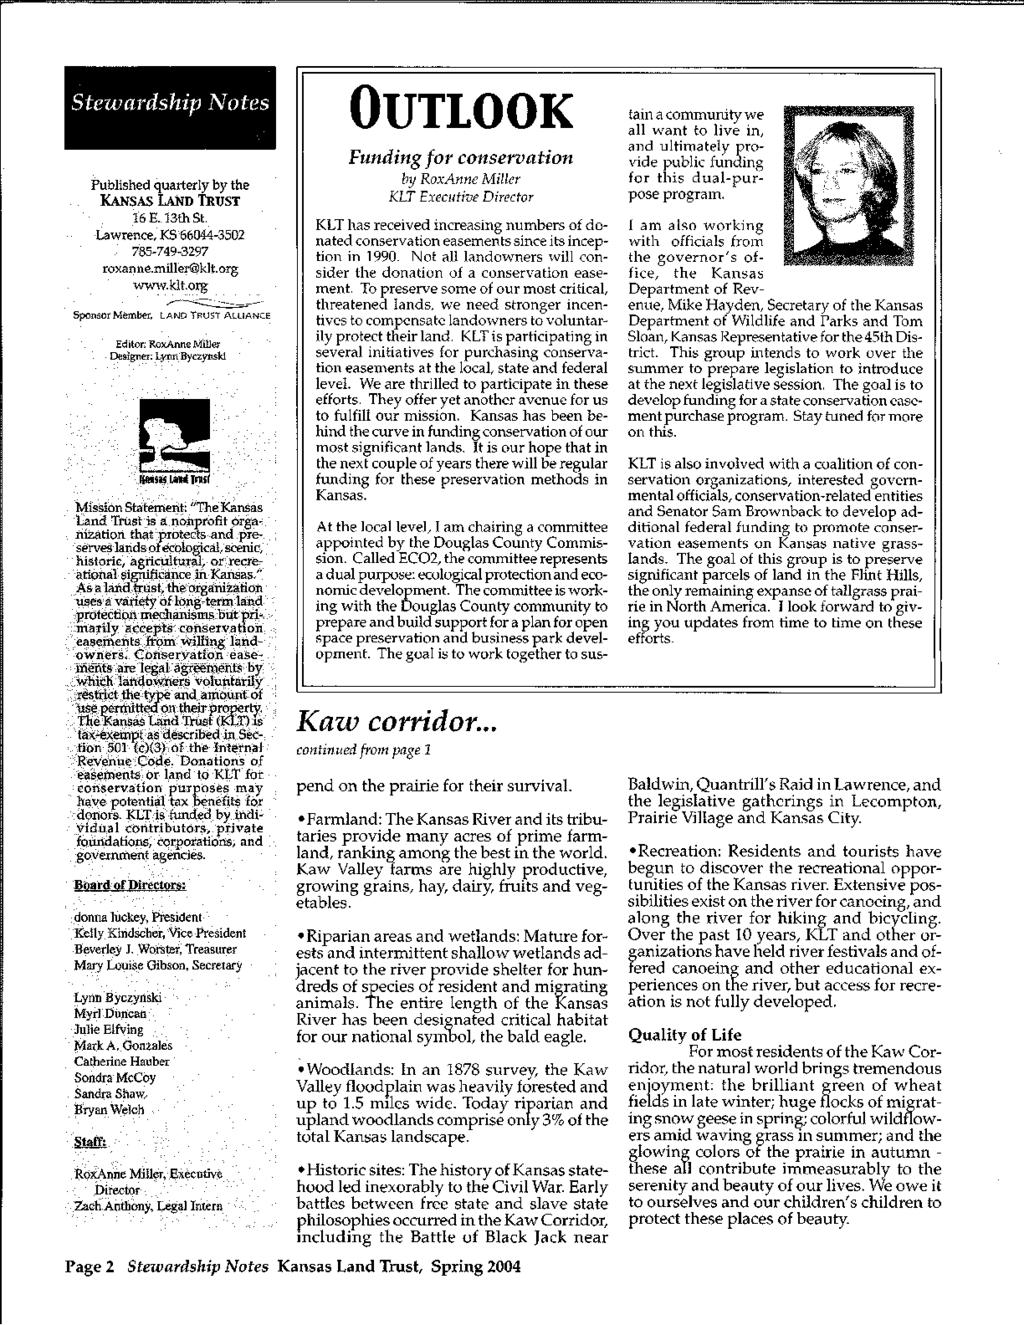 Published quarterly by the KANSAS LAND TRUST 16 E. 13th St. Lawrence, KS 66044-3502 785-749-3297 roxanne.miller@klt.org www.klt.org ~--.